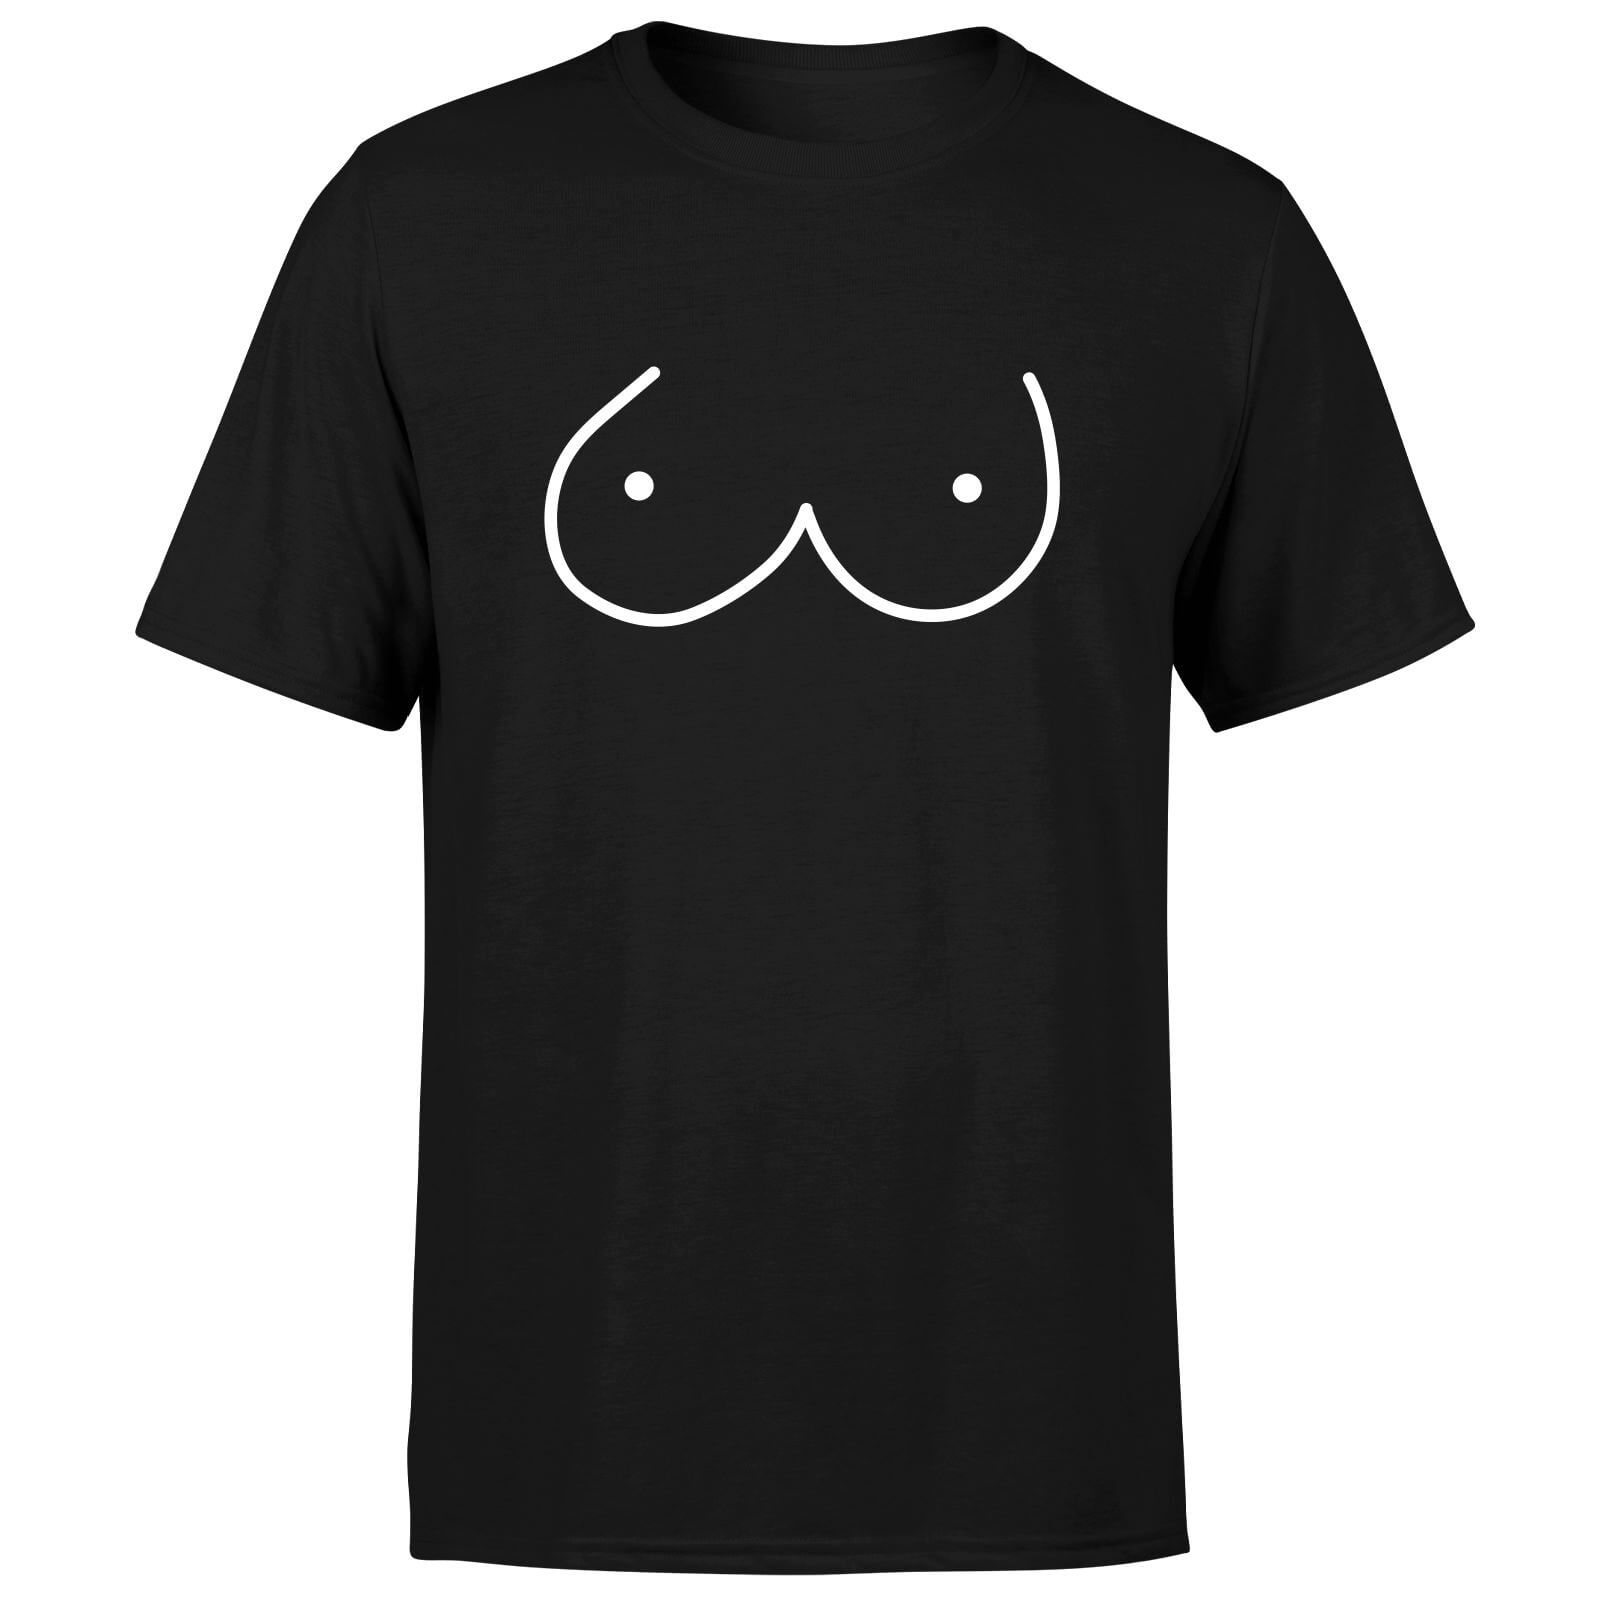 Perky Bazoomers Men's T-Shirt - Black - XS - Black